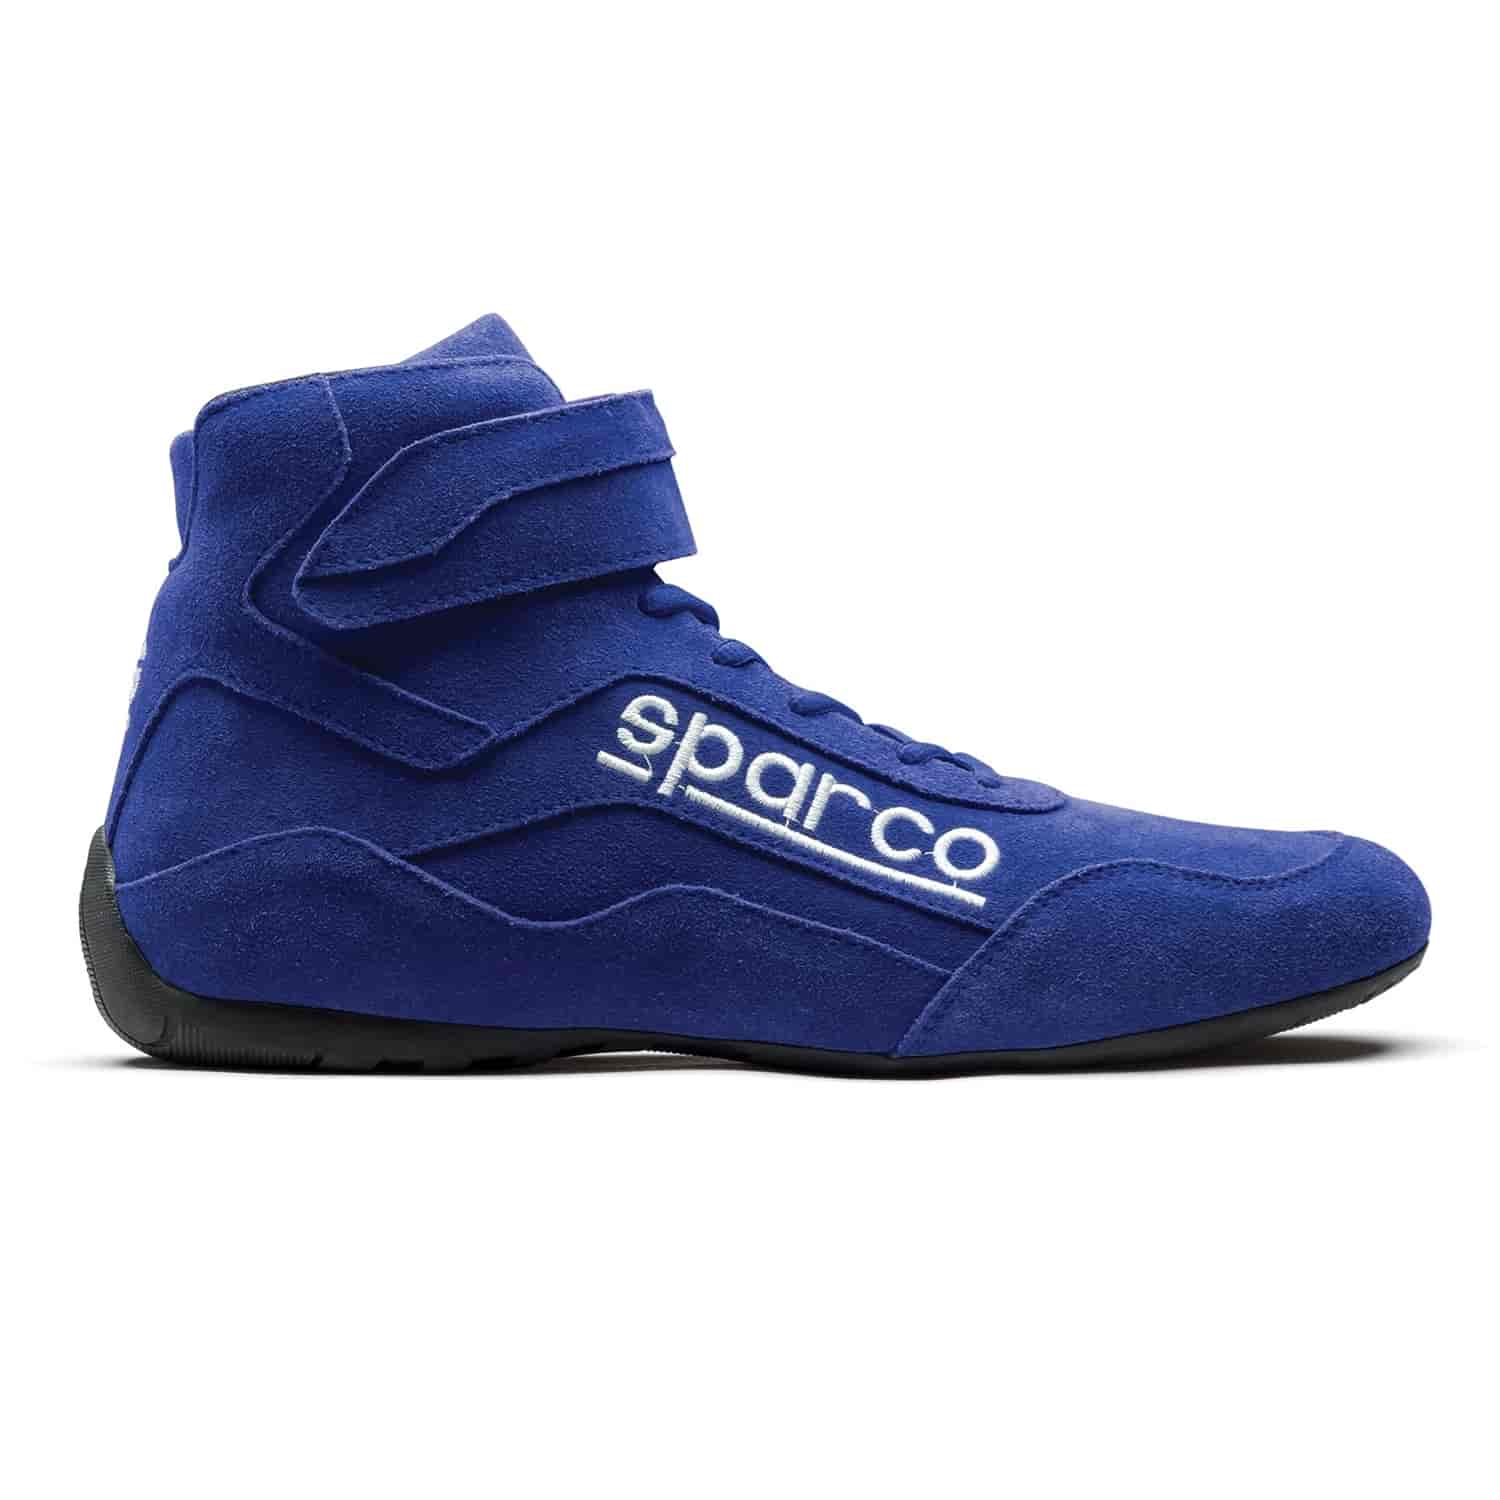 Race 2 Shoe Size 13 - Blue